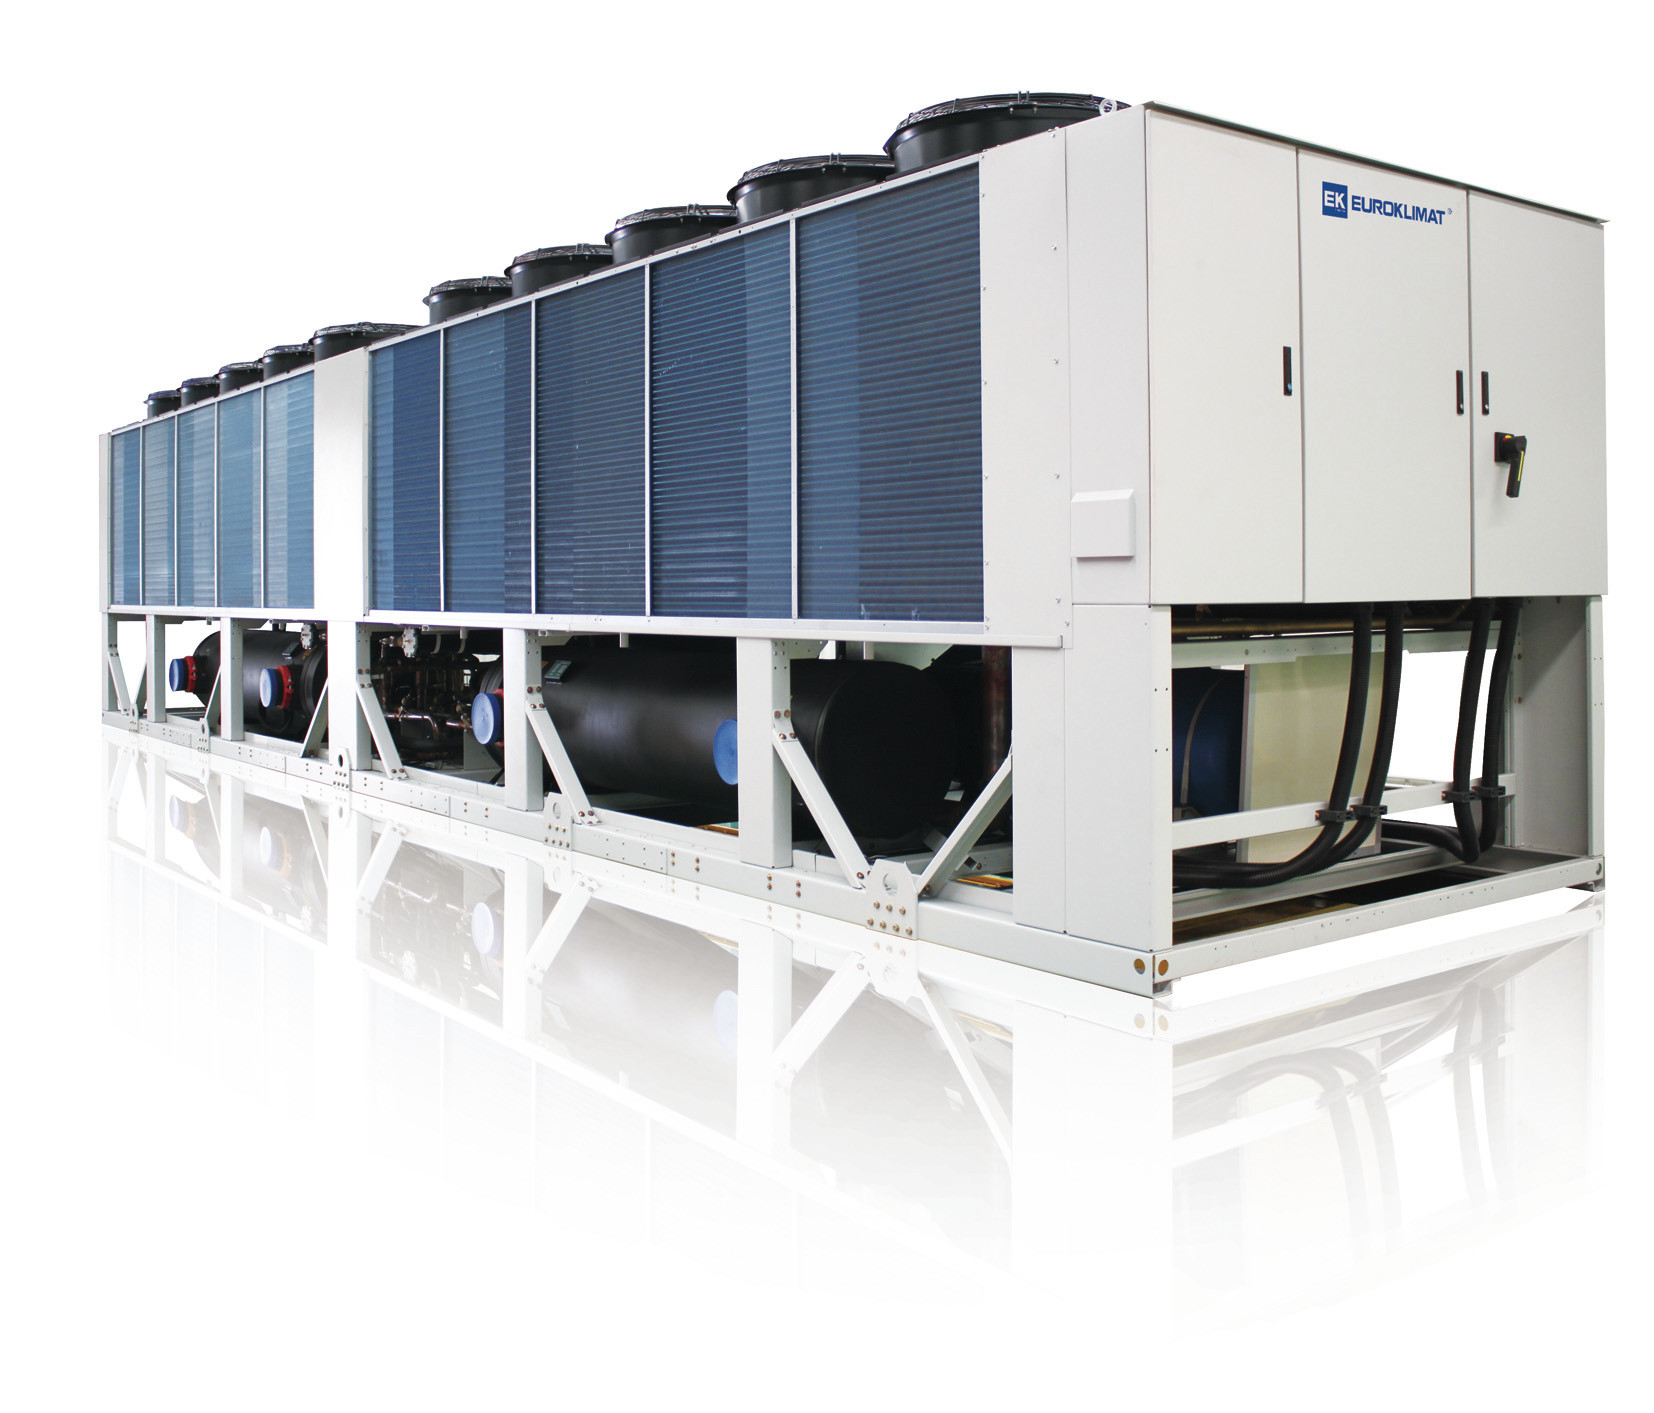 Unités de récupération de chaleur de réfrigérateur de vis refroidies par air de R407C 85 - 235 tonnes